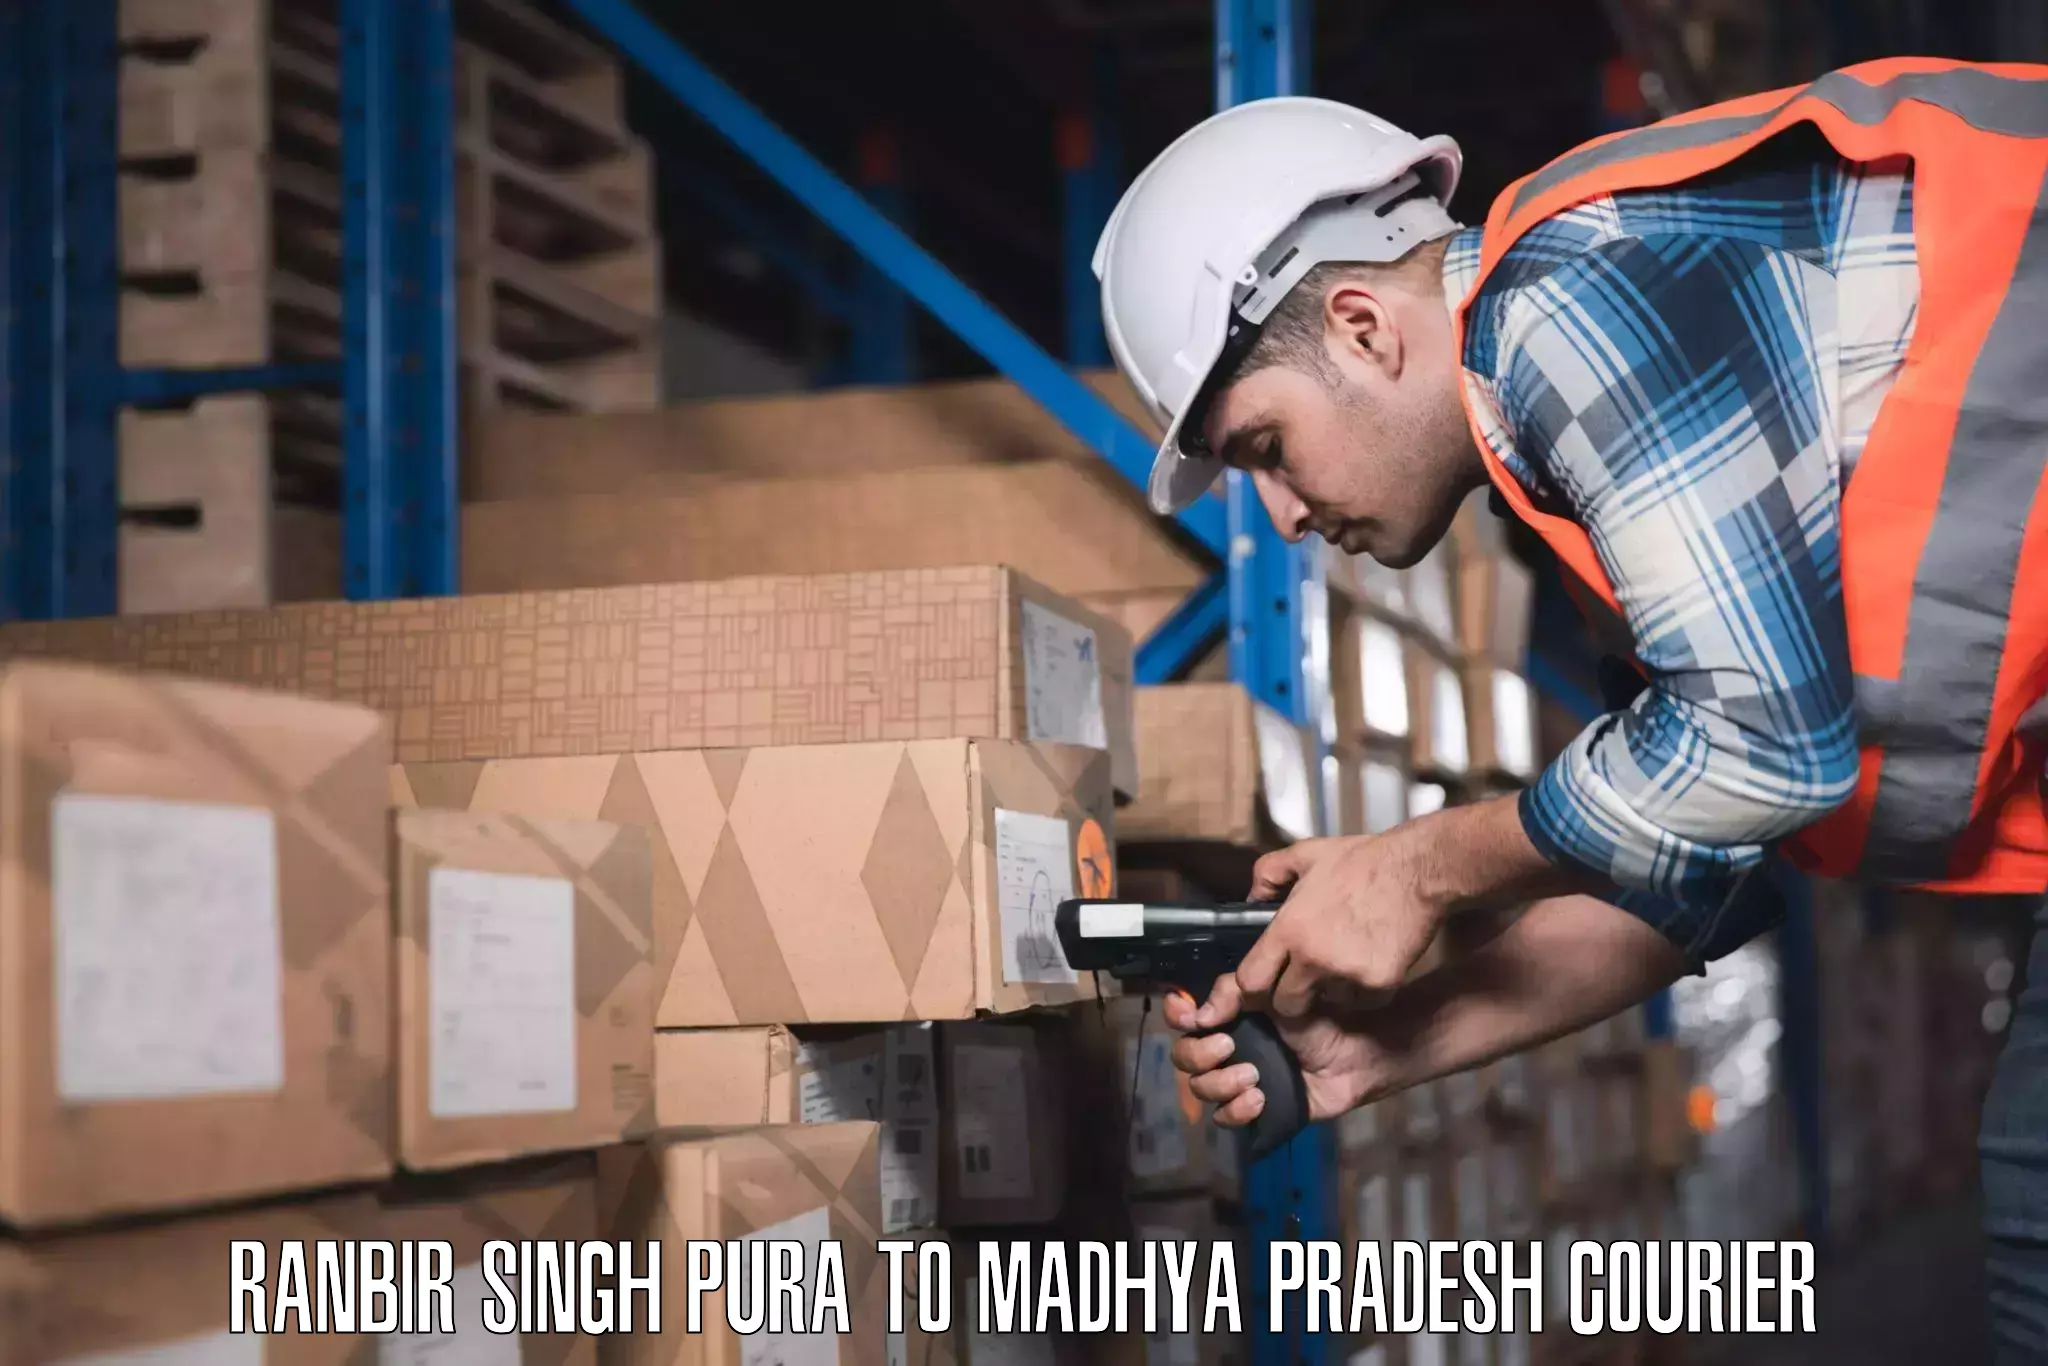 Luggage shipping service Ranbir Singh Pura to Nainpur